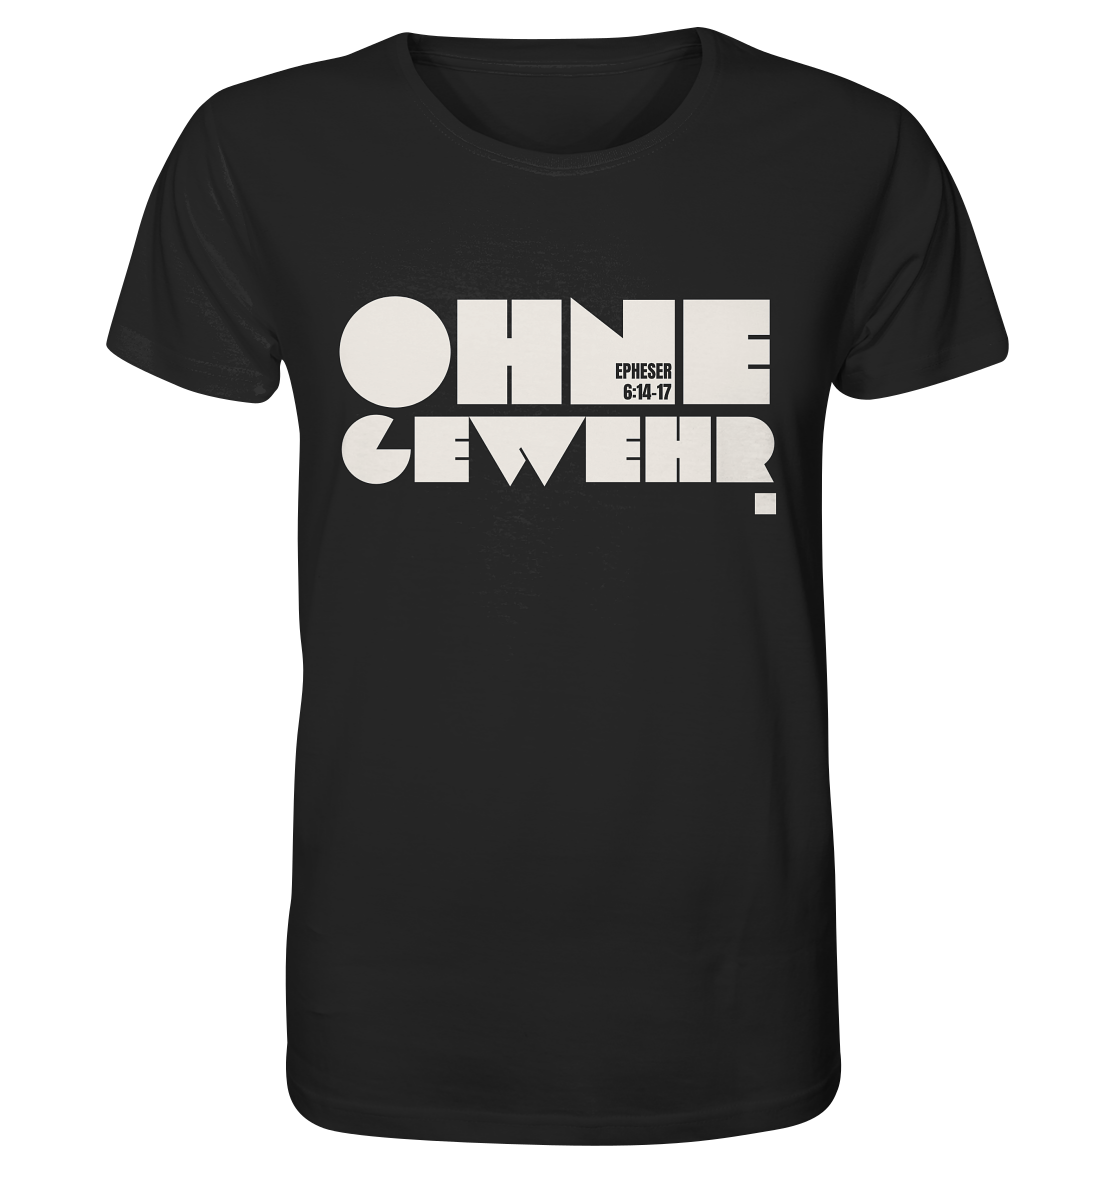 Ohne Gewehr - Organic Shirt